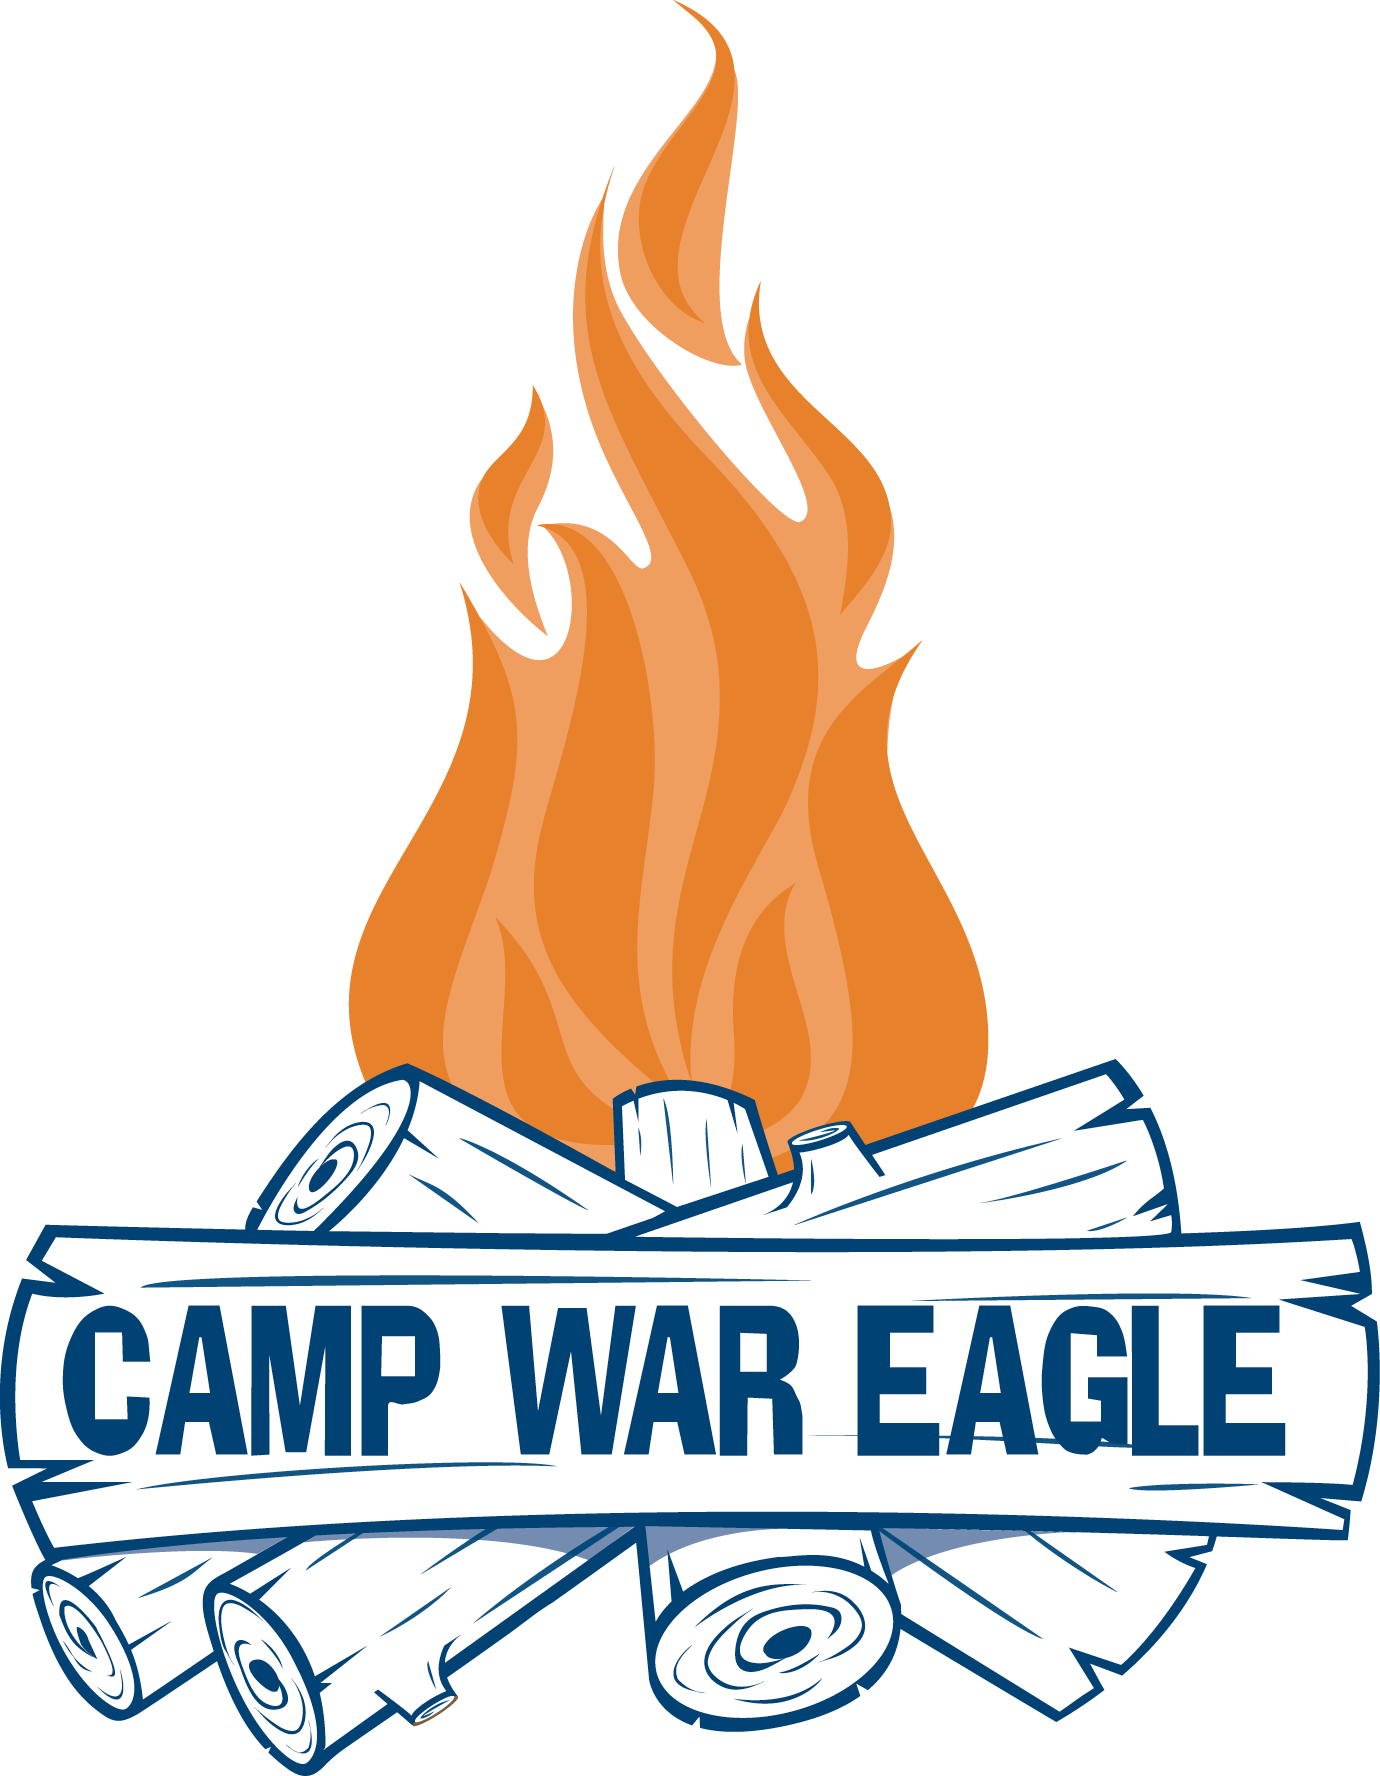 Camp War Eagle